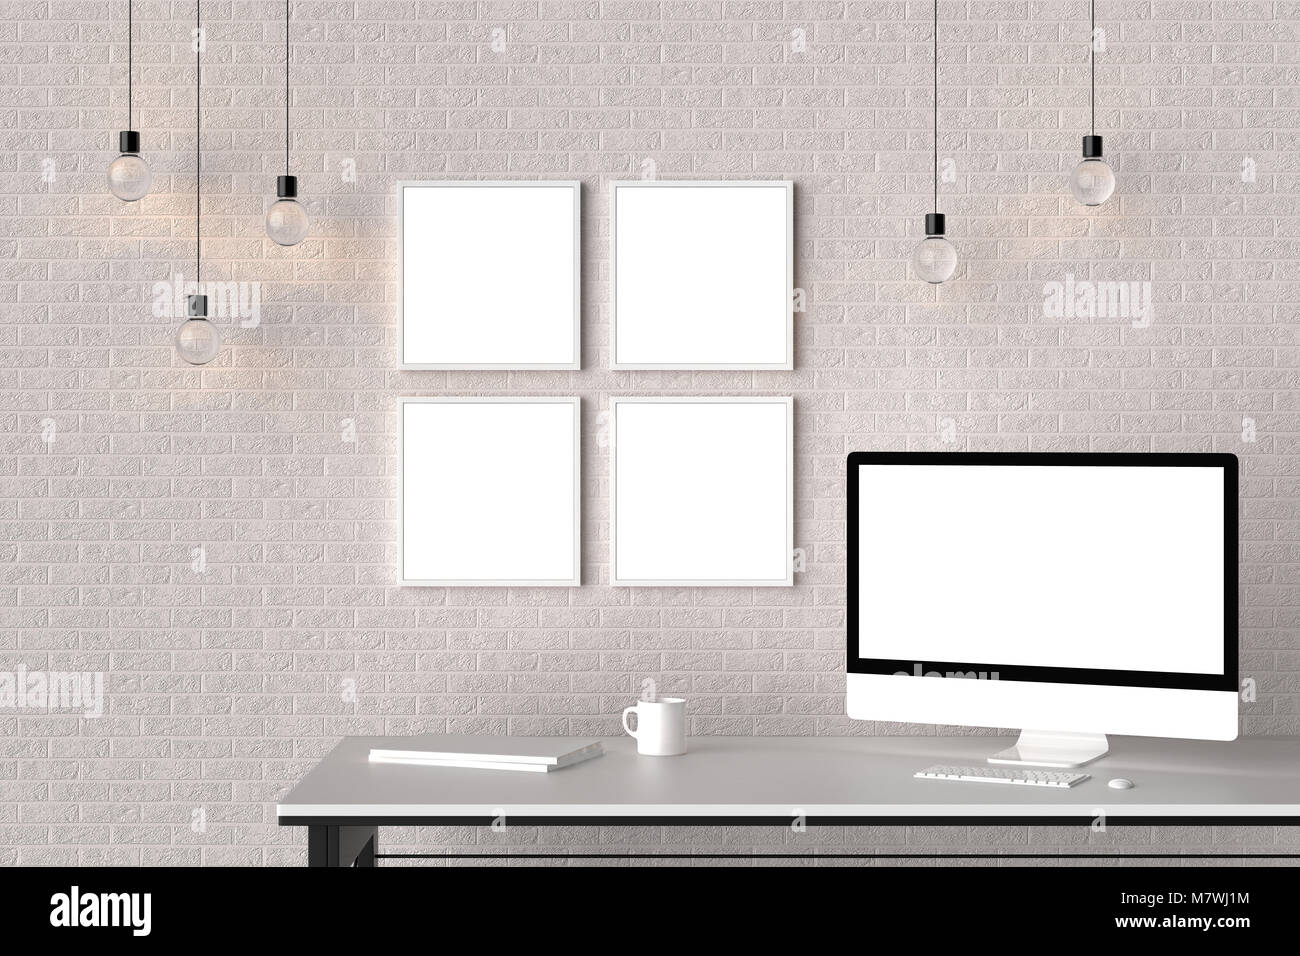 Area di lavoro moderno isolato con cornici vuote su un muro di mattoni e isolato sullo schermo del computer. 3D illustra Foto Stock